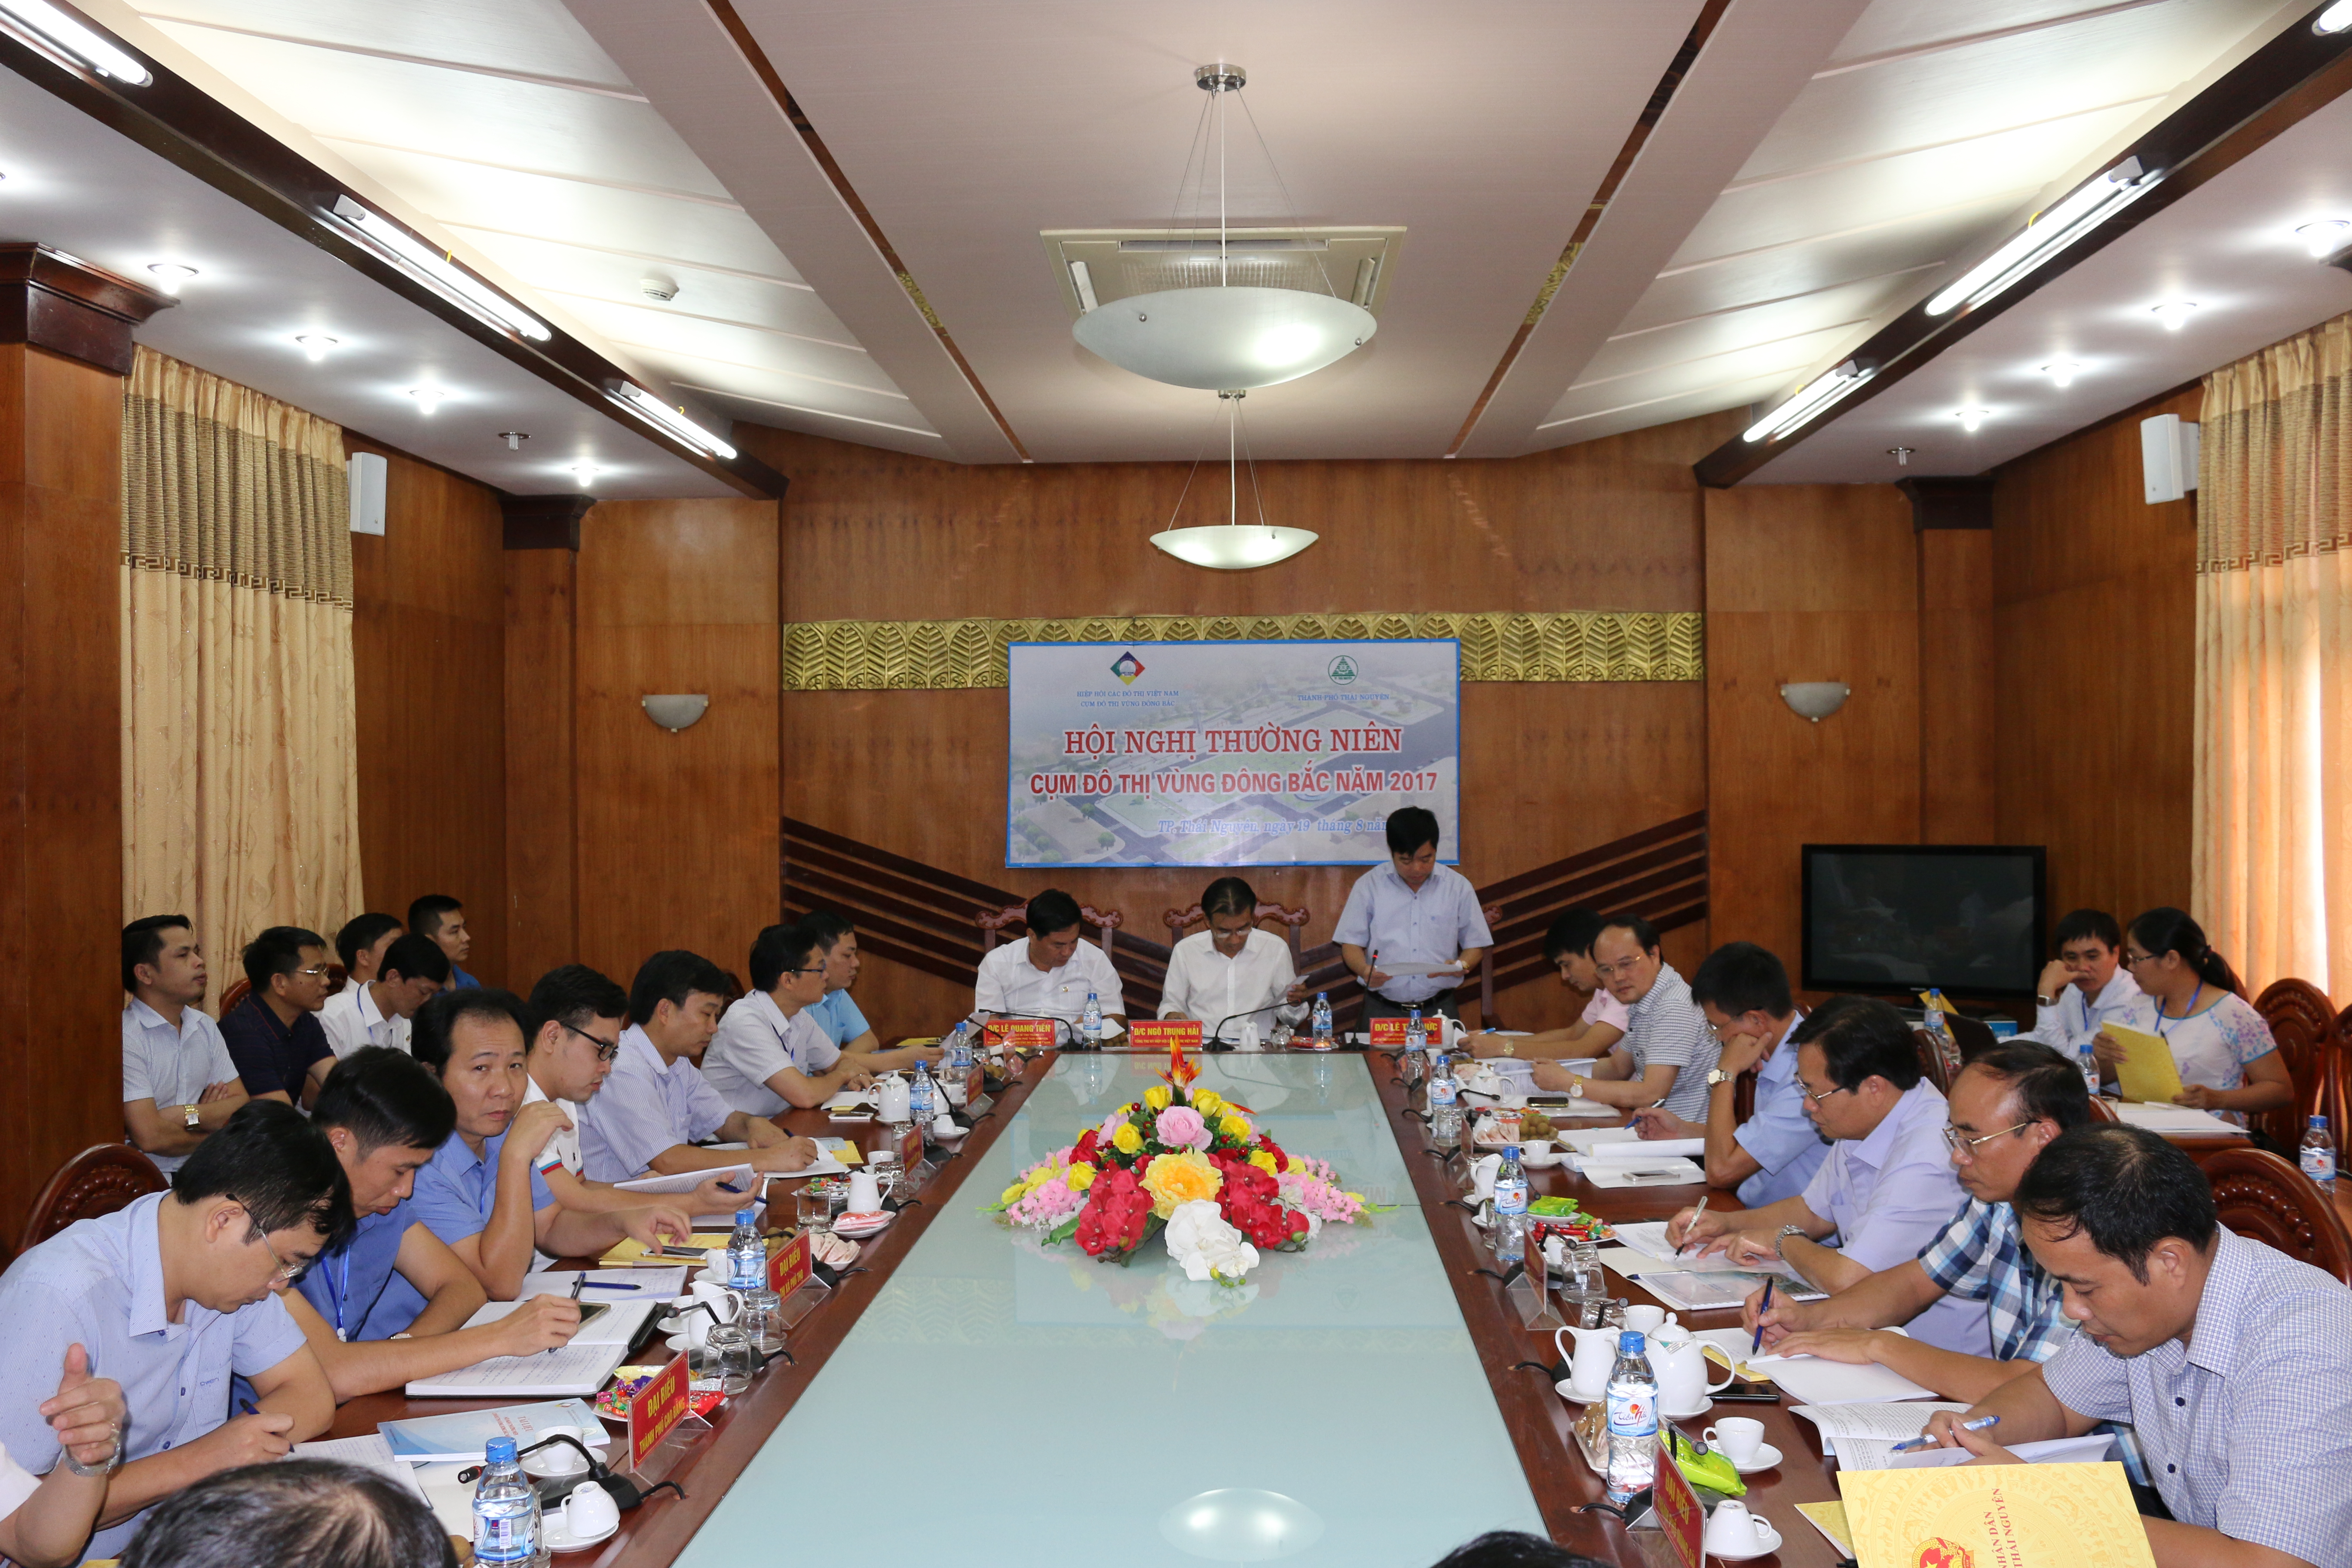 Đối thoại Chính sách về Phát triển kinh tế địa phương được tổ chức tại các Hội nghị cụm đô thị